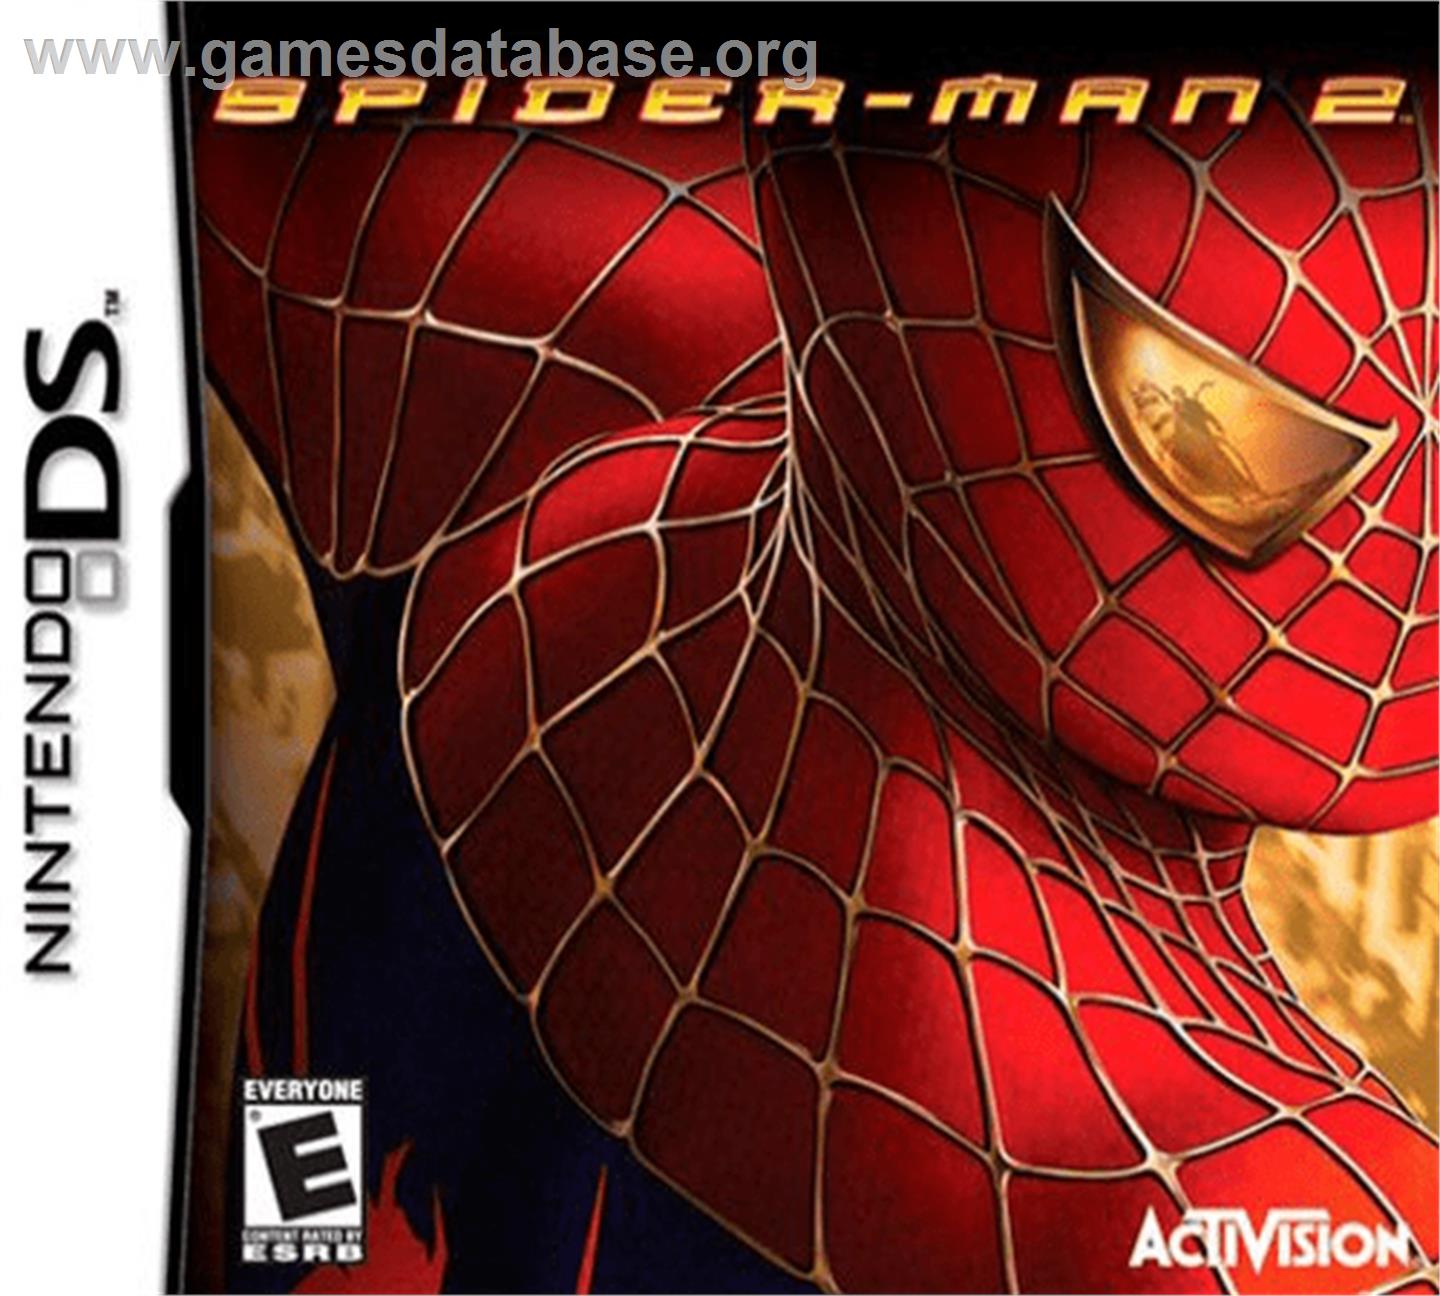 Spider-Man 2 - Nintendo DS - Artwork - Box